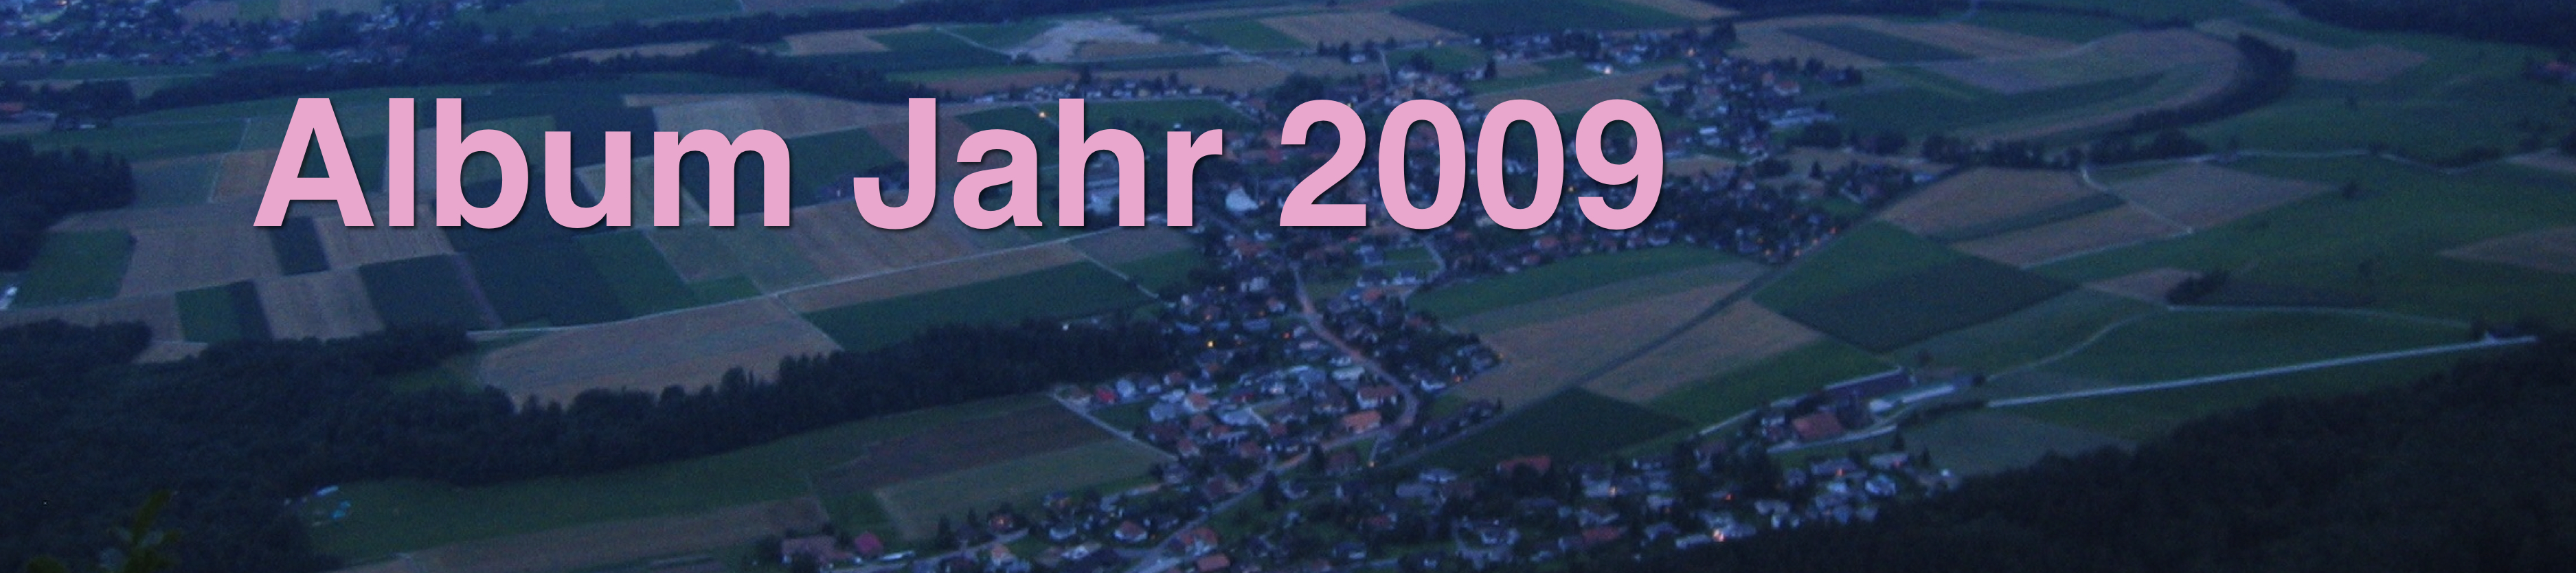 Pano-2009